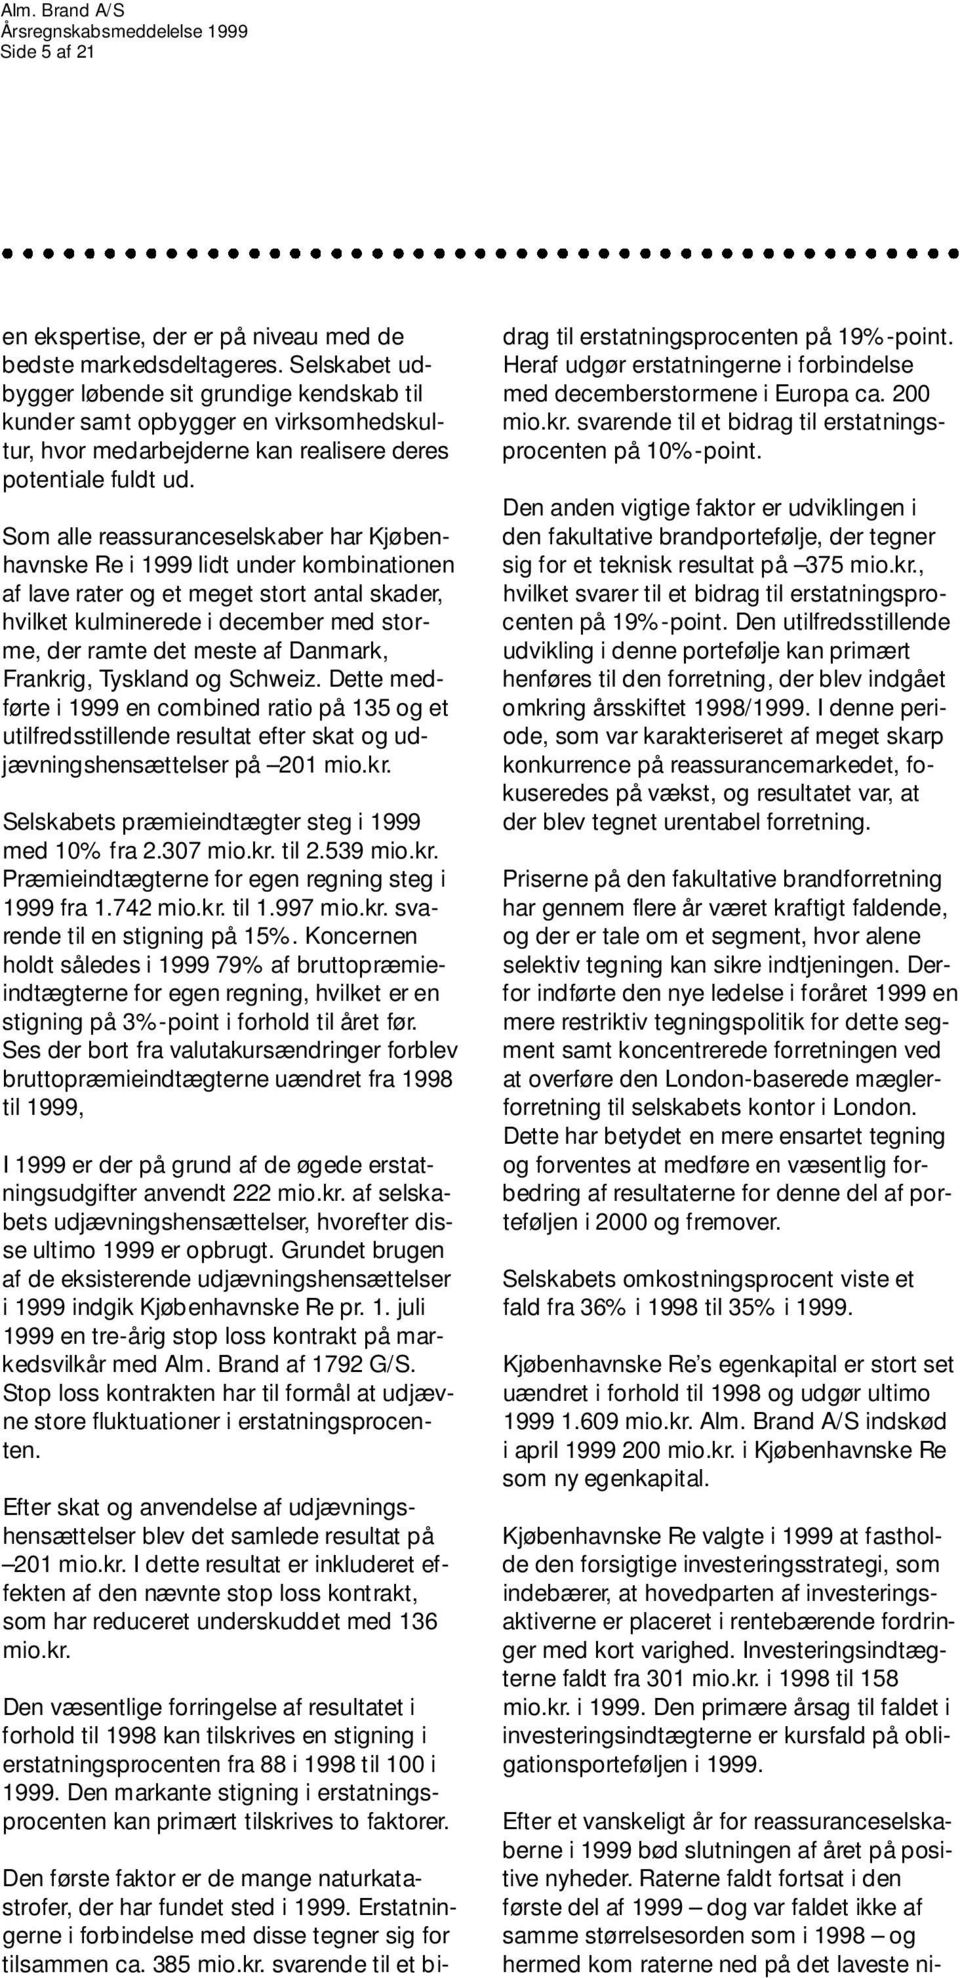 Som alle reassuranceselskaber har Kjøbenhavnske Re i 1999 lidt under kombinationen af lave rater og et meget stort antal skader, hvilket kulminerede i december med storme, der ramte det meste af